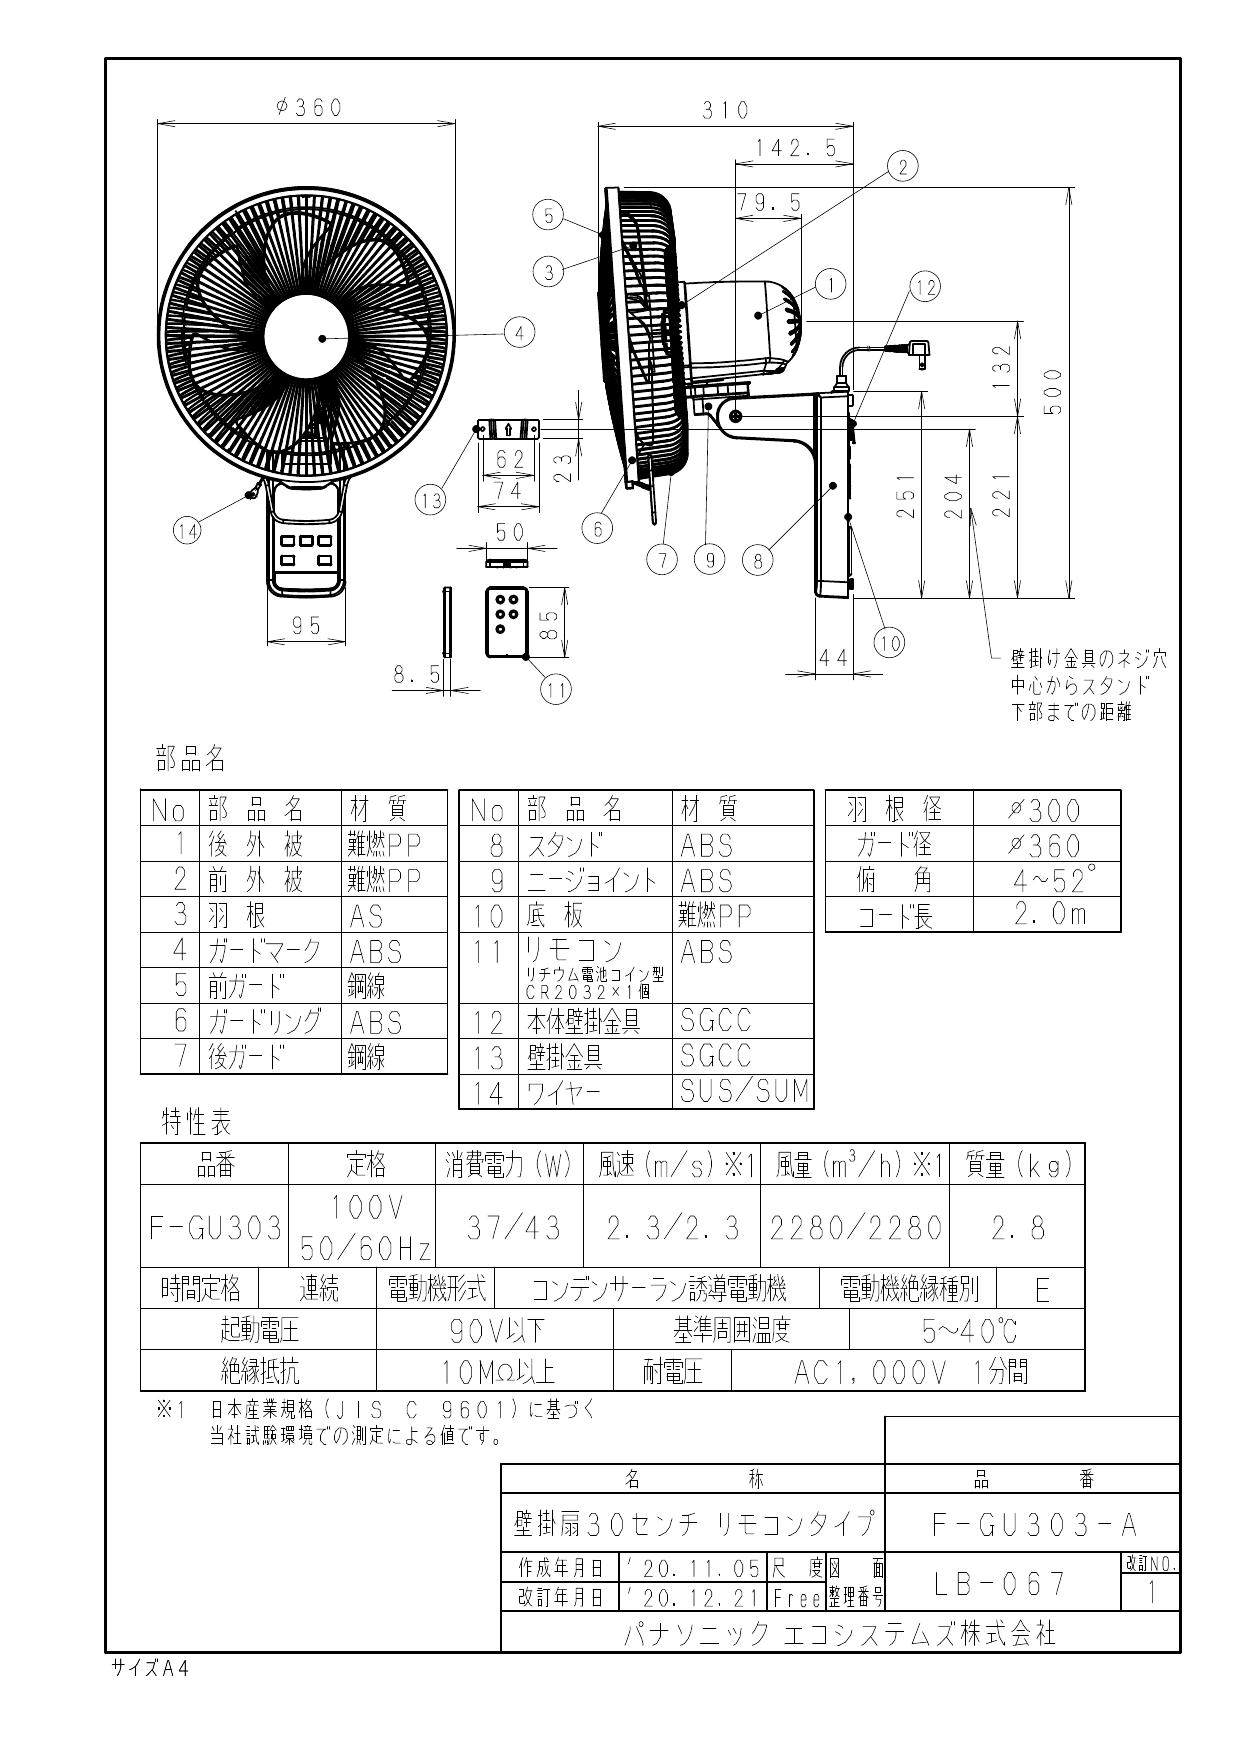 パナソニック F-GU303-A取扱説明書 商品図面 | 通販 プロストア ダイレクト